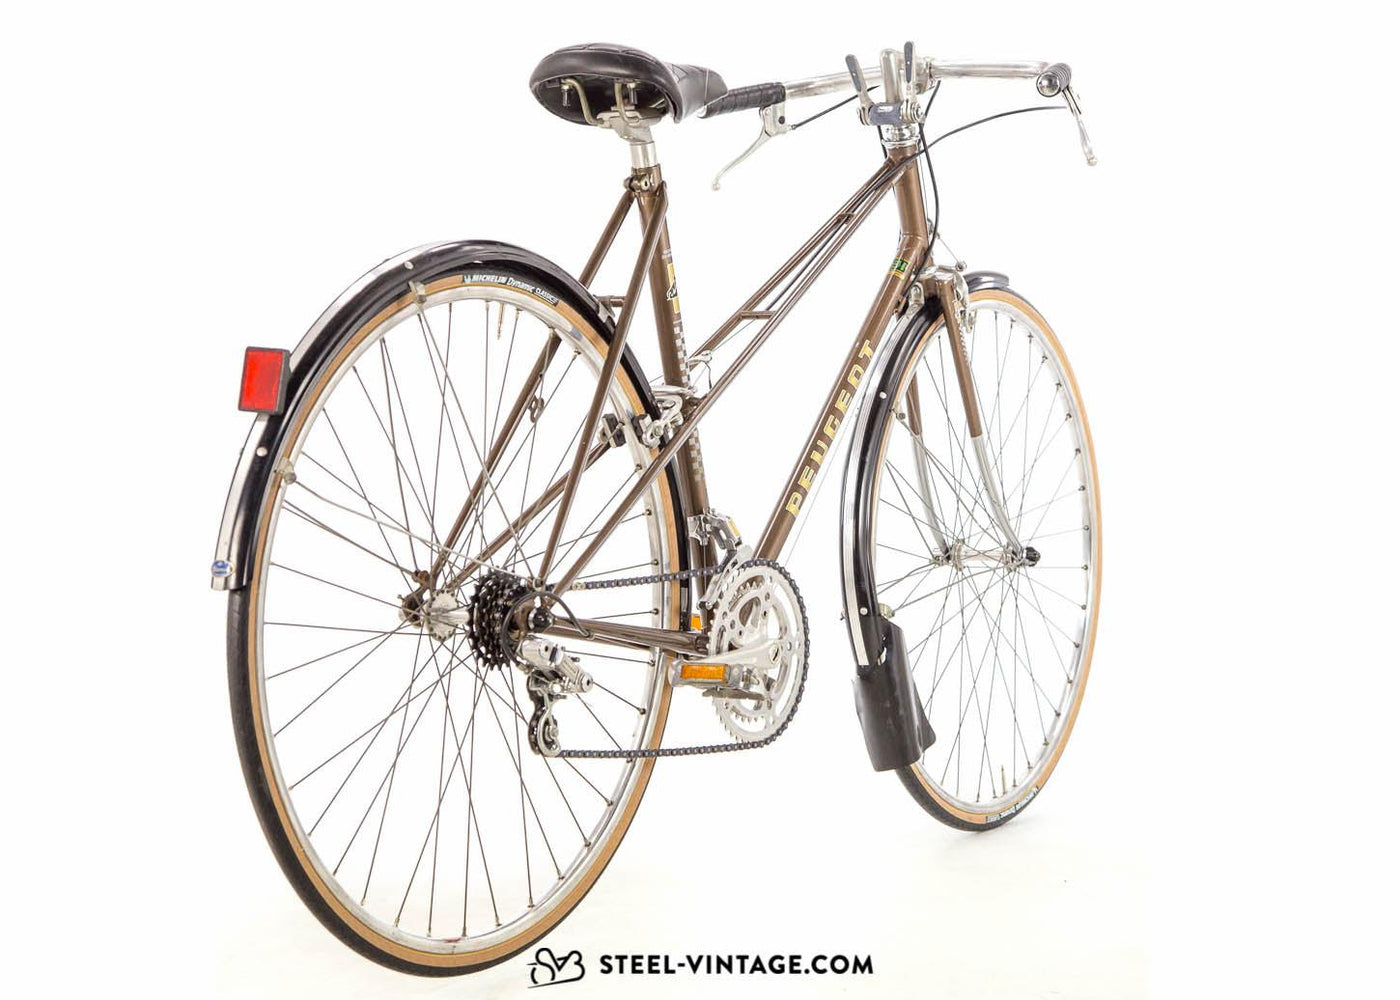 Steel Vintage Bikes - Peugeot Mixte Reynolds 531 Ladies Bicycle